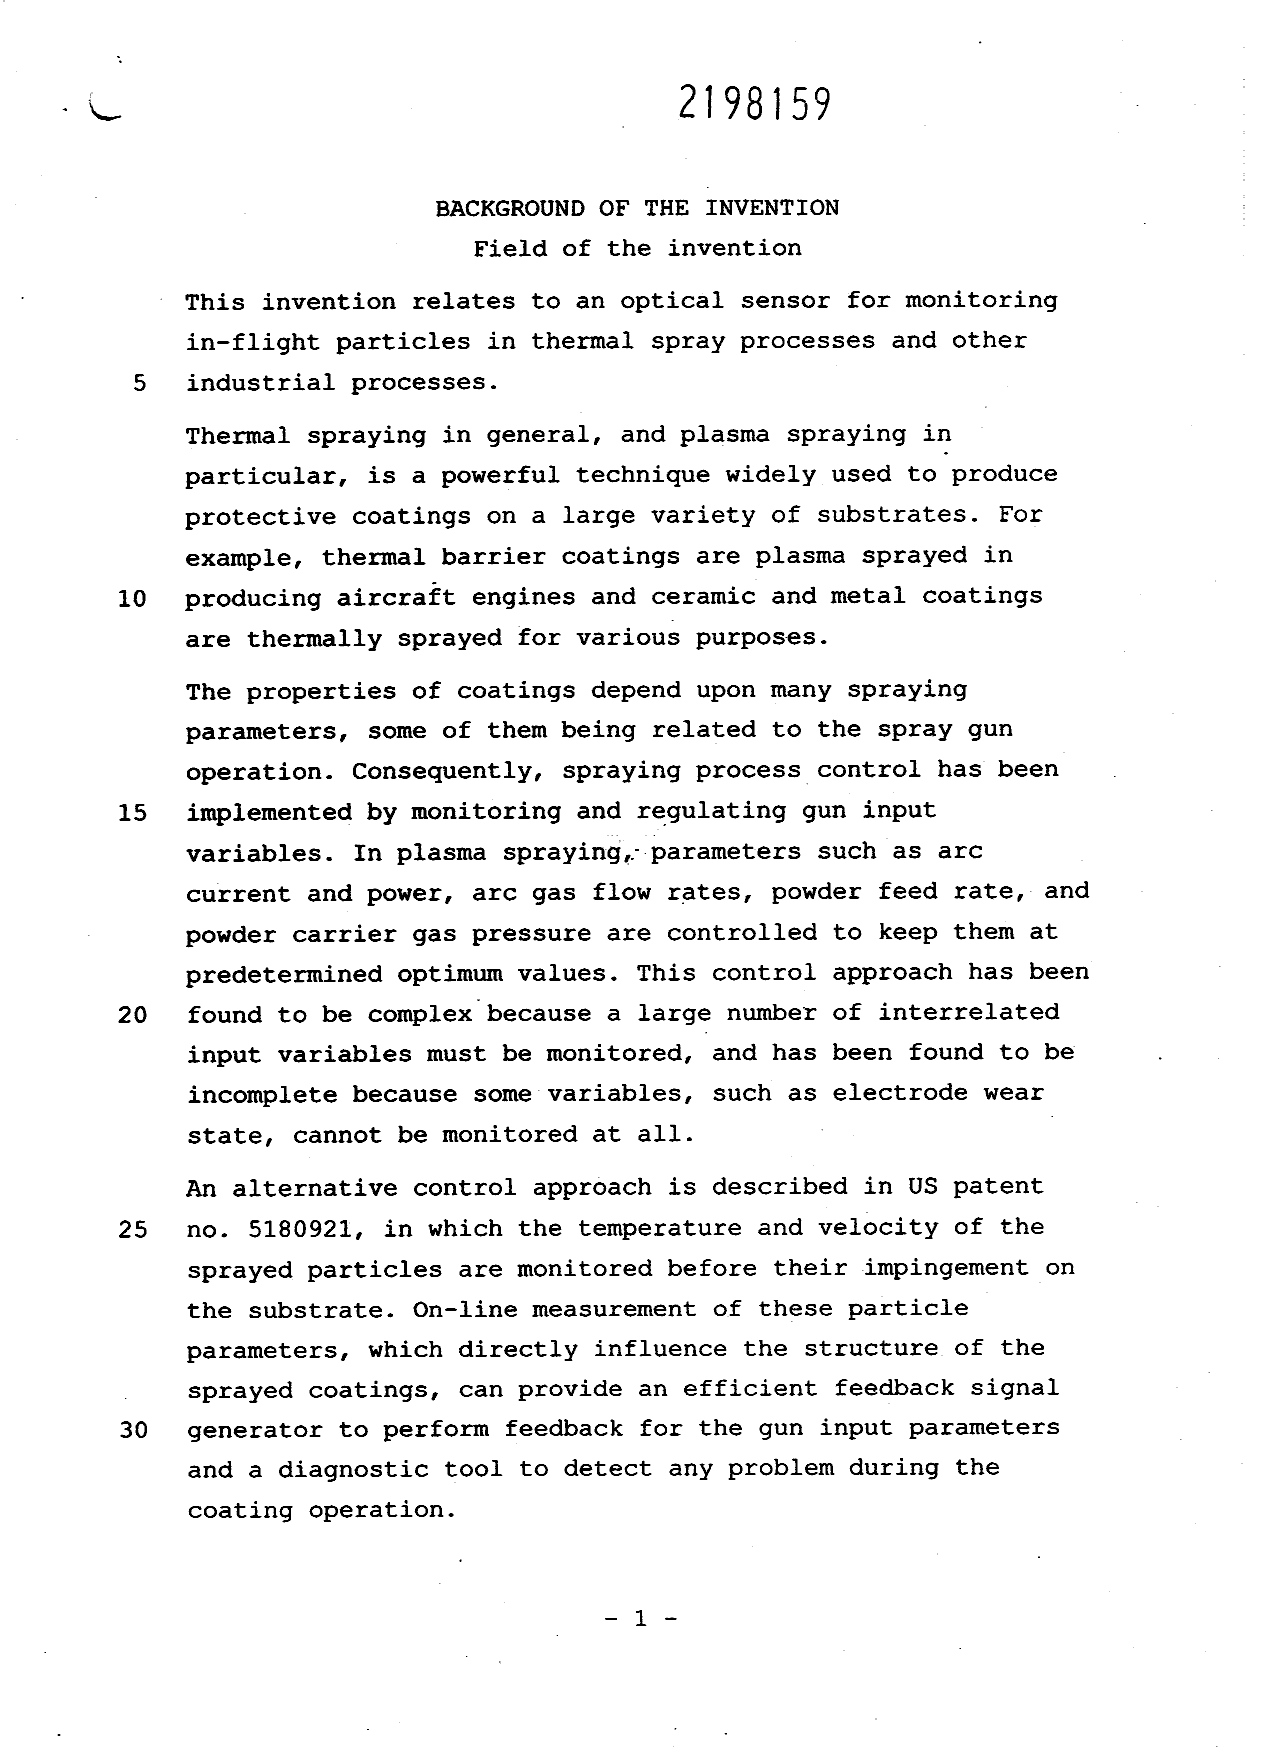 Canadian Patent Document 2198159. Description 19970526. Image 1 of 14